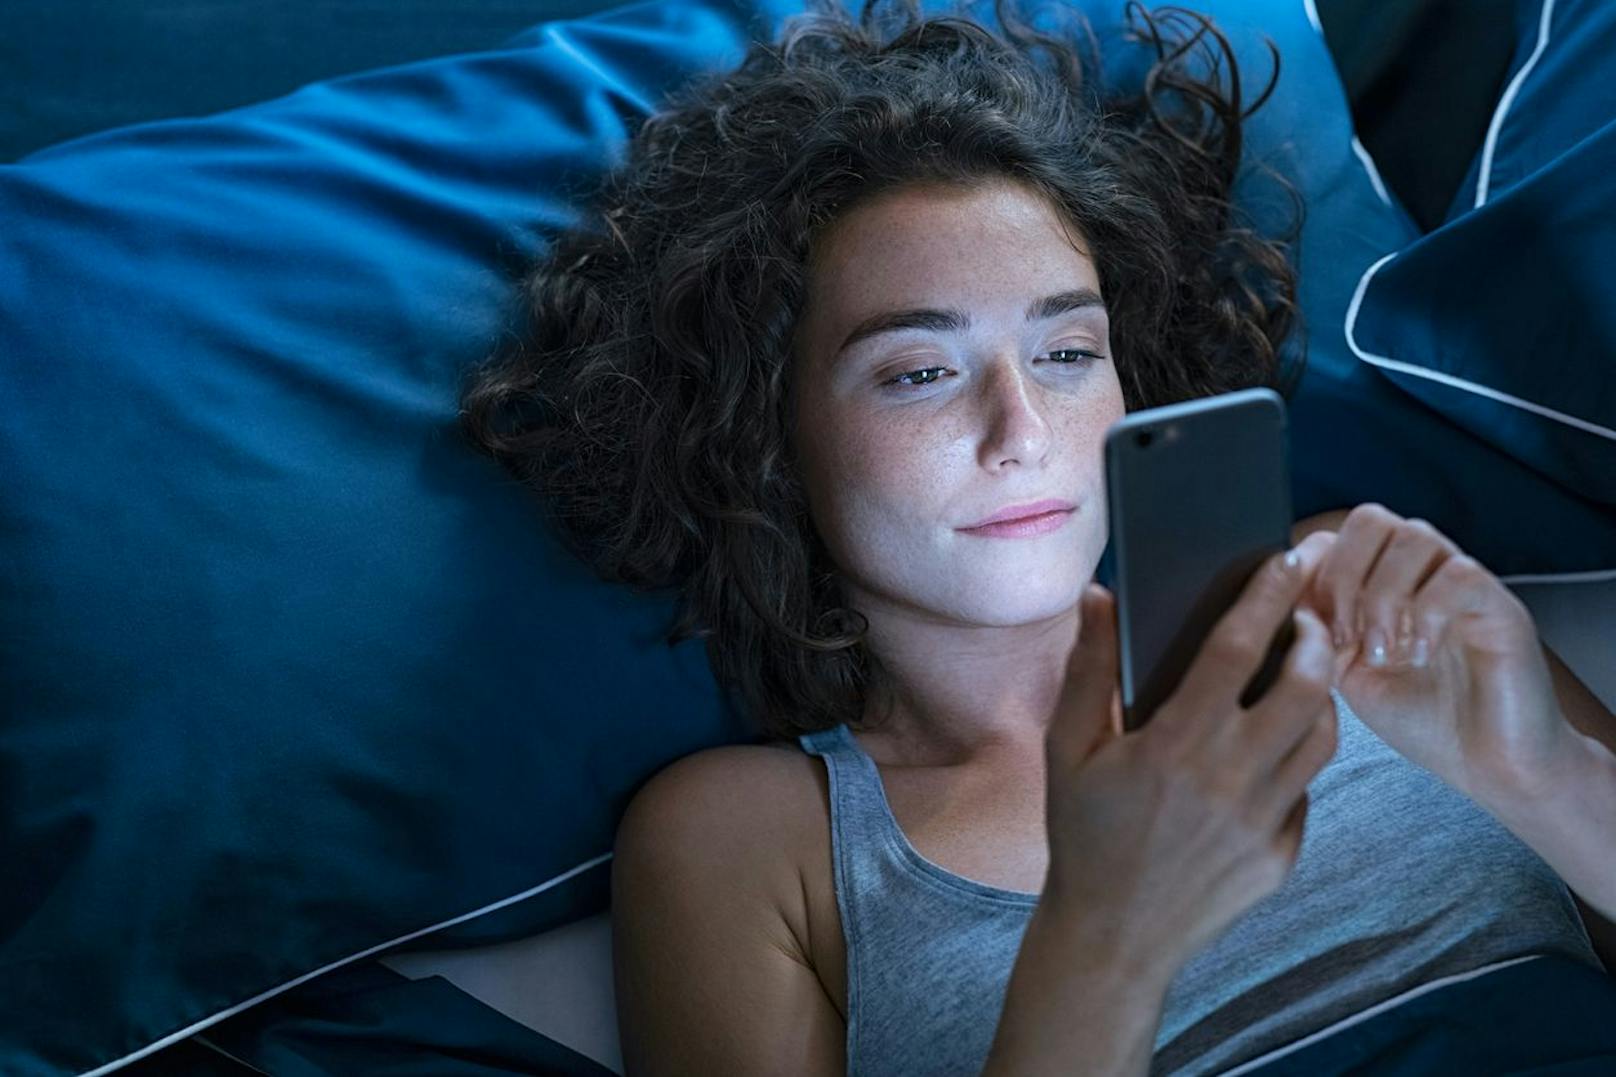 Lege dein Handy nicht nur kurz vor dem Schlaf auf die Seite. Verabschiede dich deshalb mindestens 60 Minuten vor dem Schlafengehen von deinen Smart-Geräten.